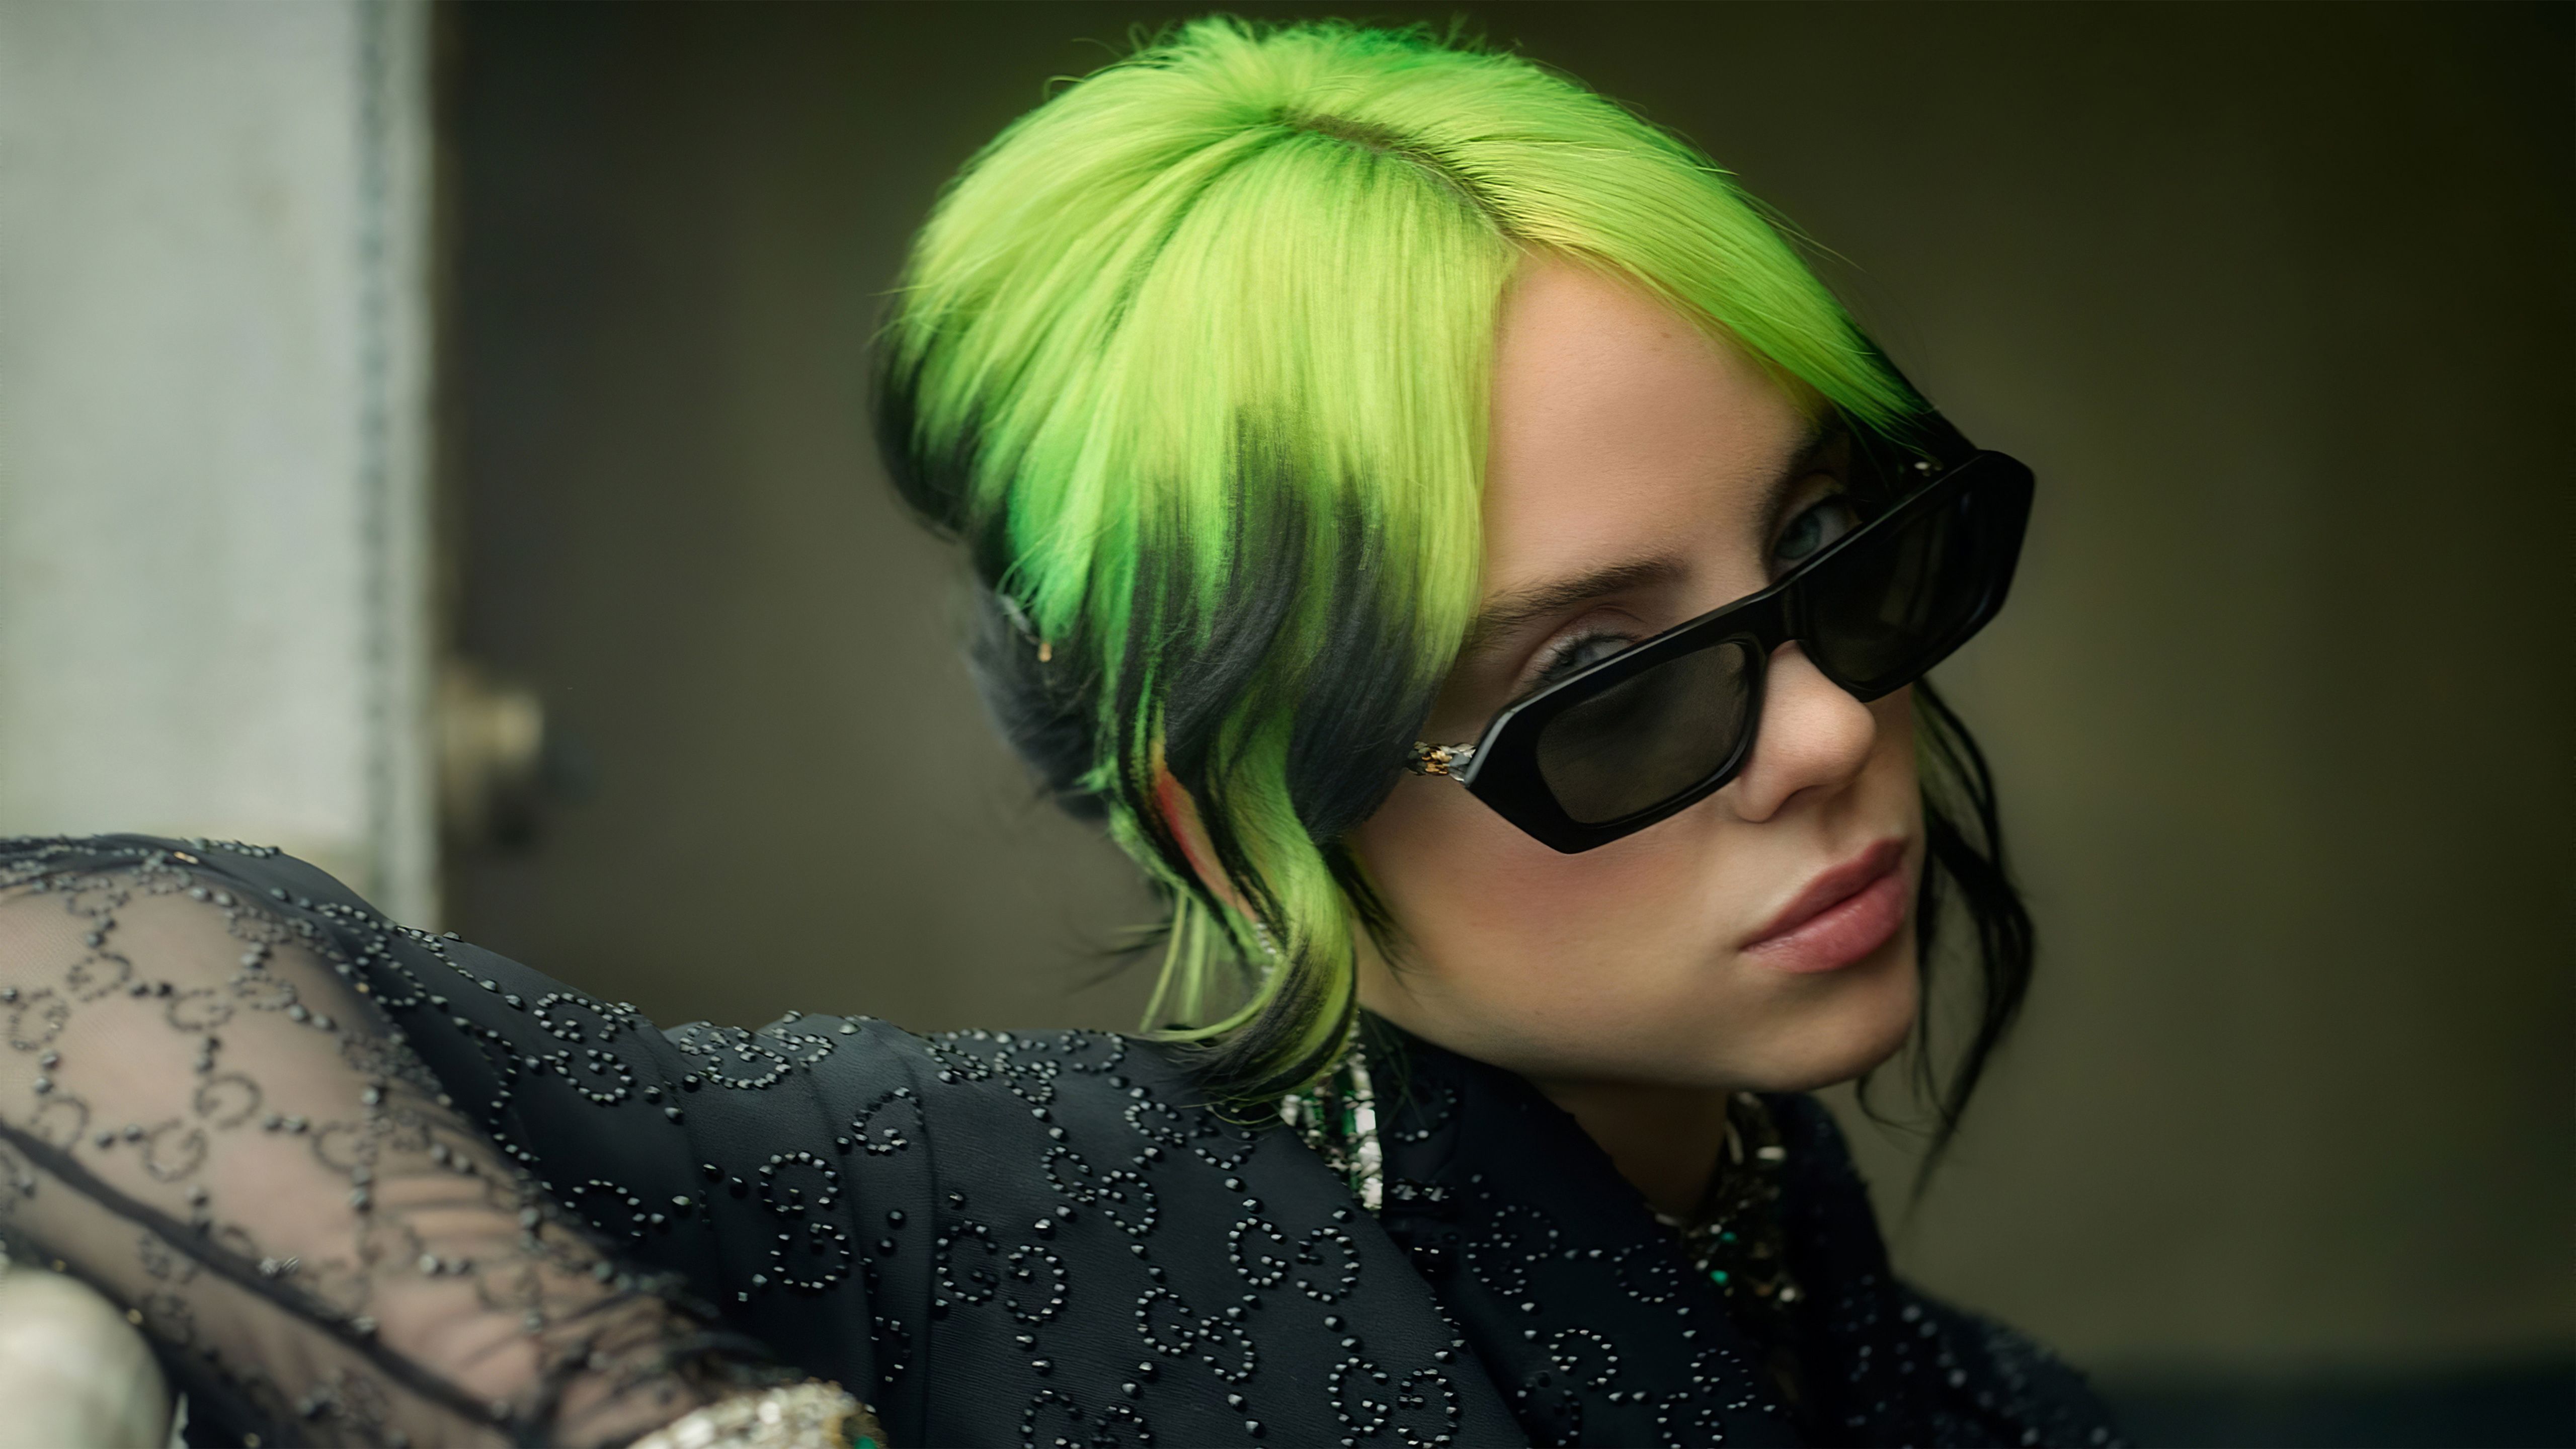 Singer Billie Eilish Green Hair Style 4K, 5K, 8K, Desktop